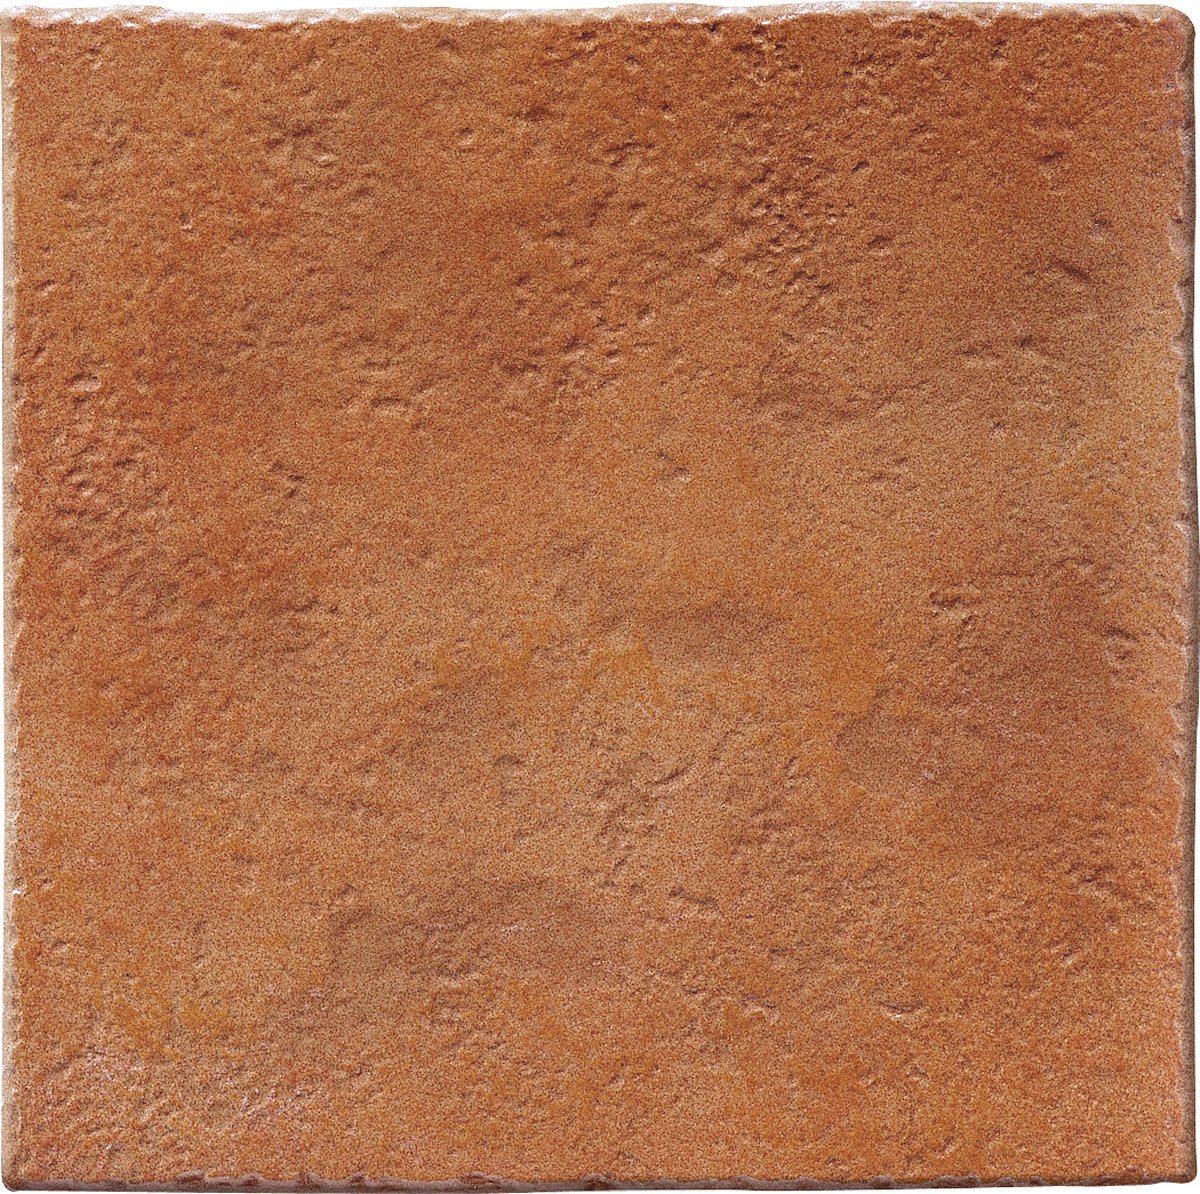 Керамогранит Keradom Selciaia Rosso Grainy, цвет красный терракотовый, поверхность структурированная, квадрат, 250x250